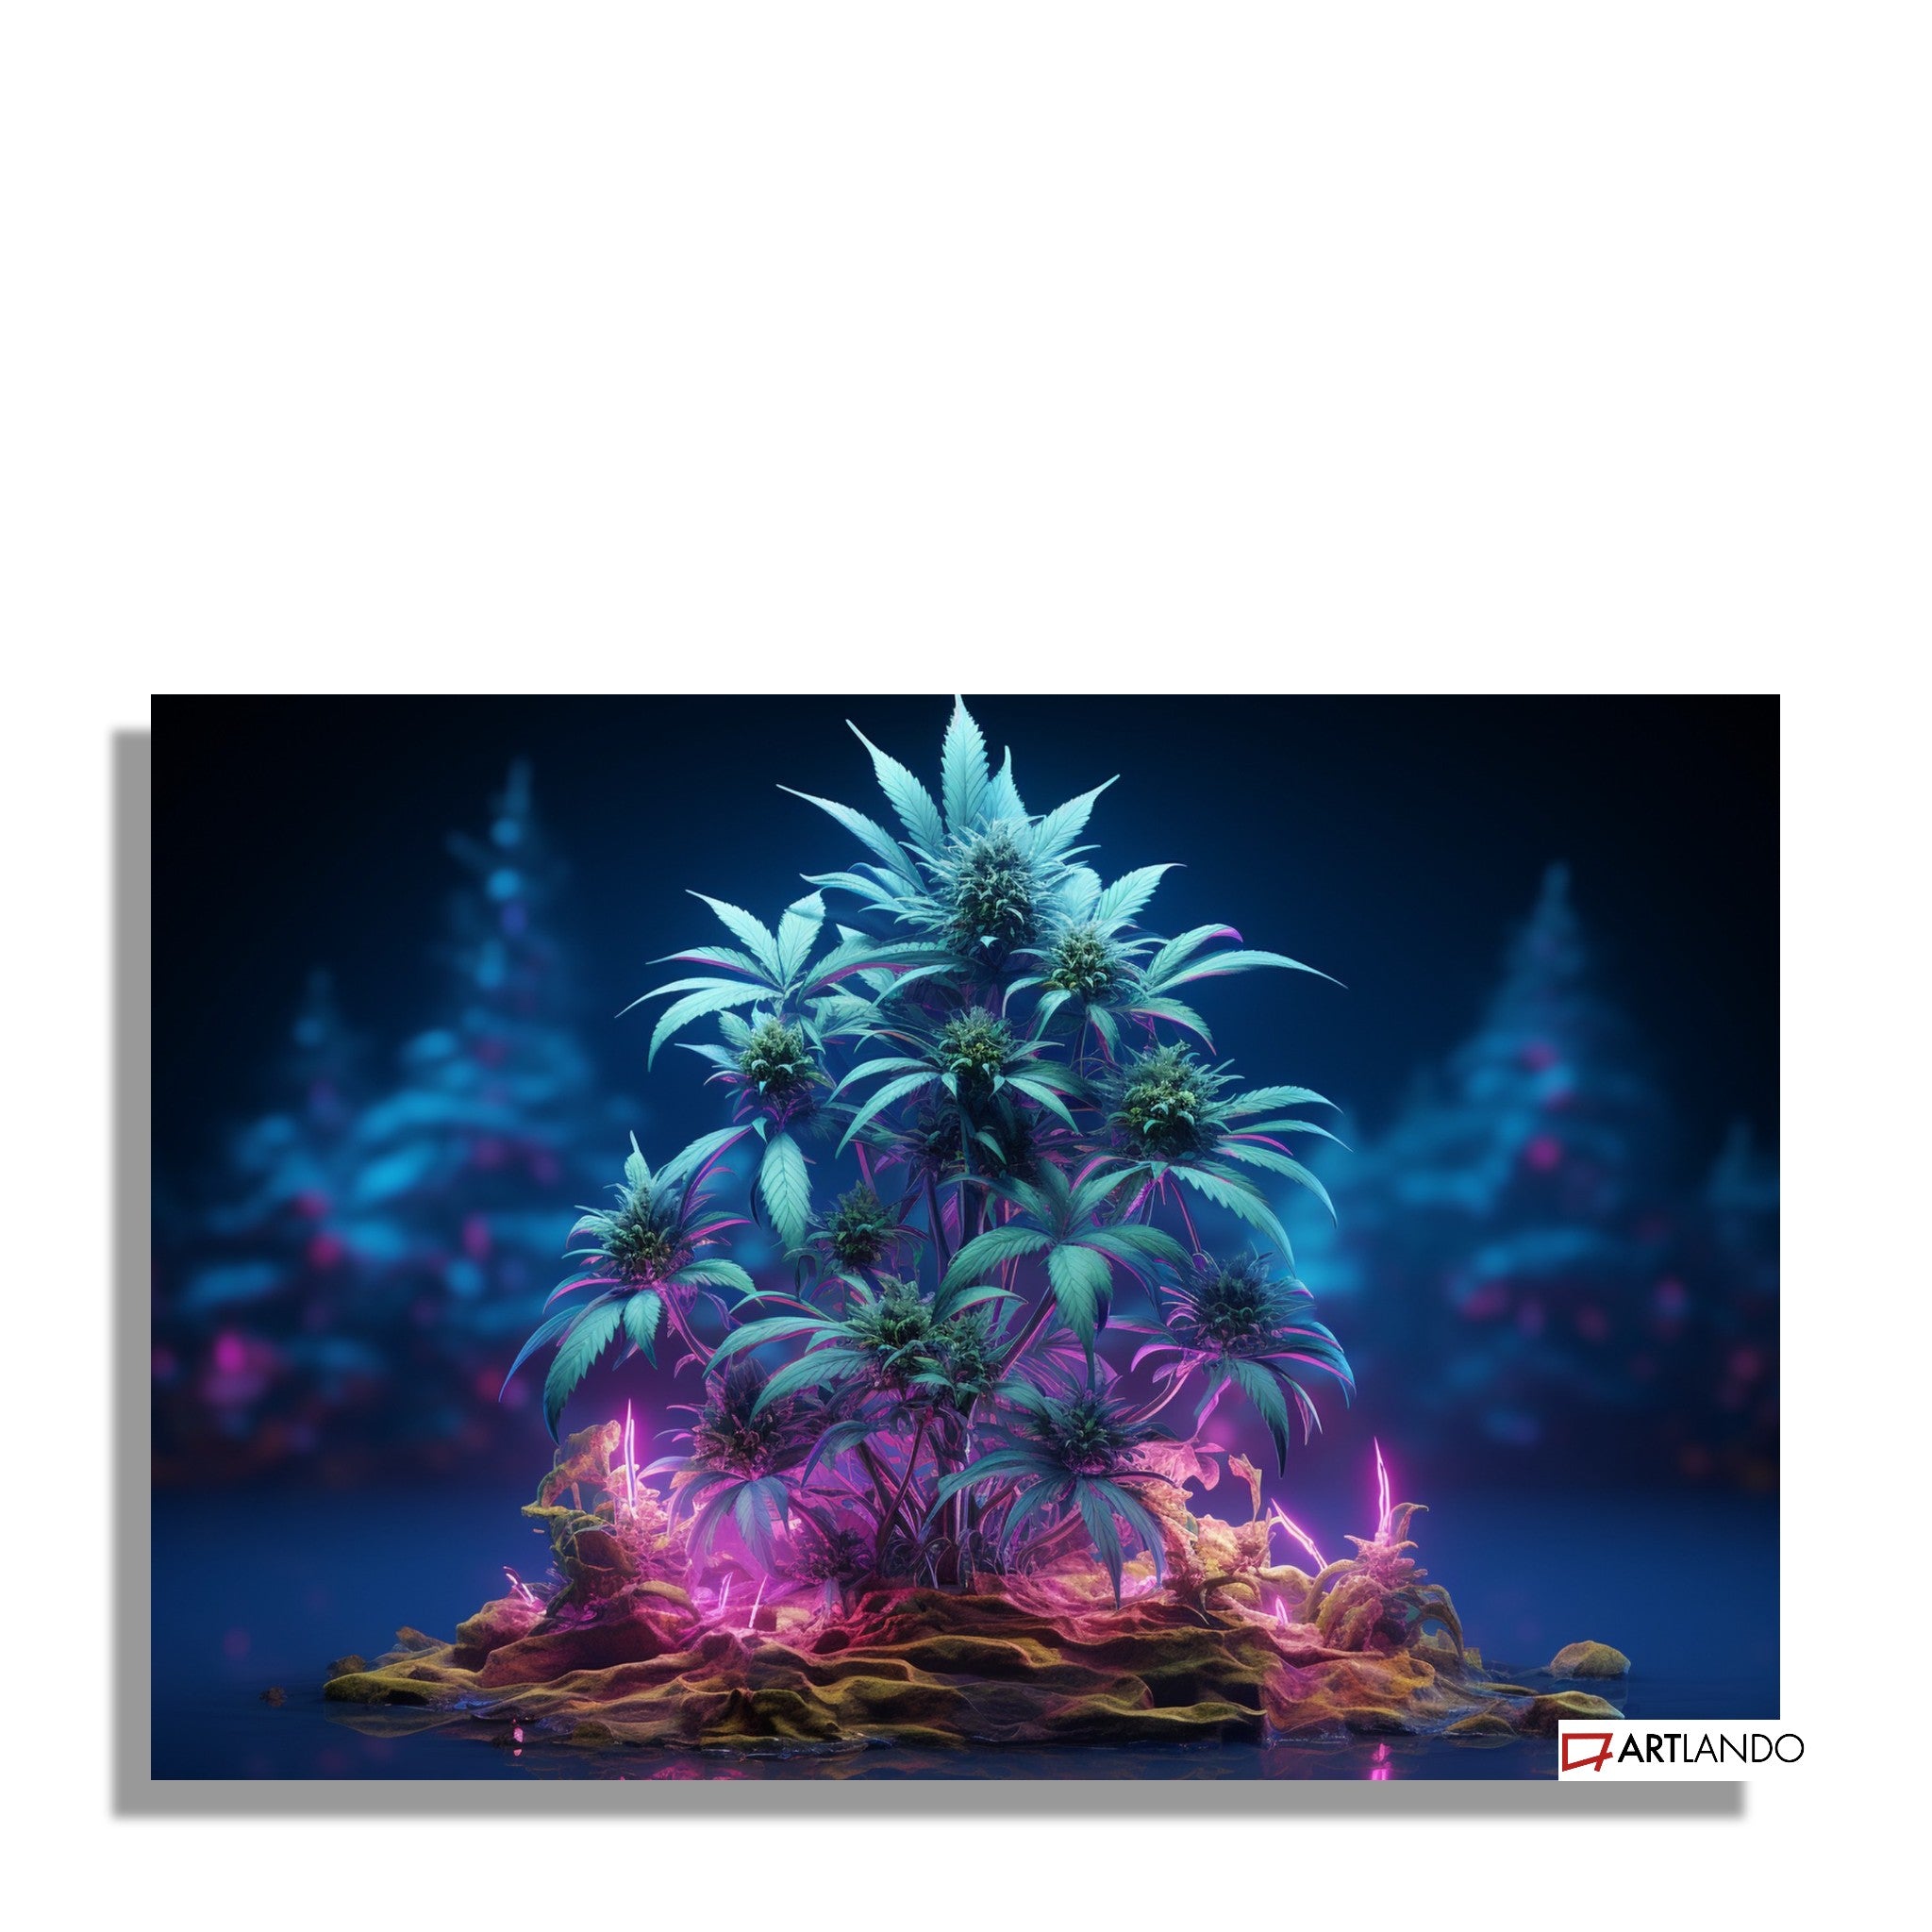 Ultrarealistische Hanfpflanze in buntem Neonlicht